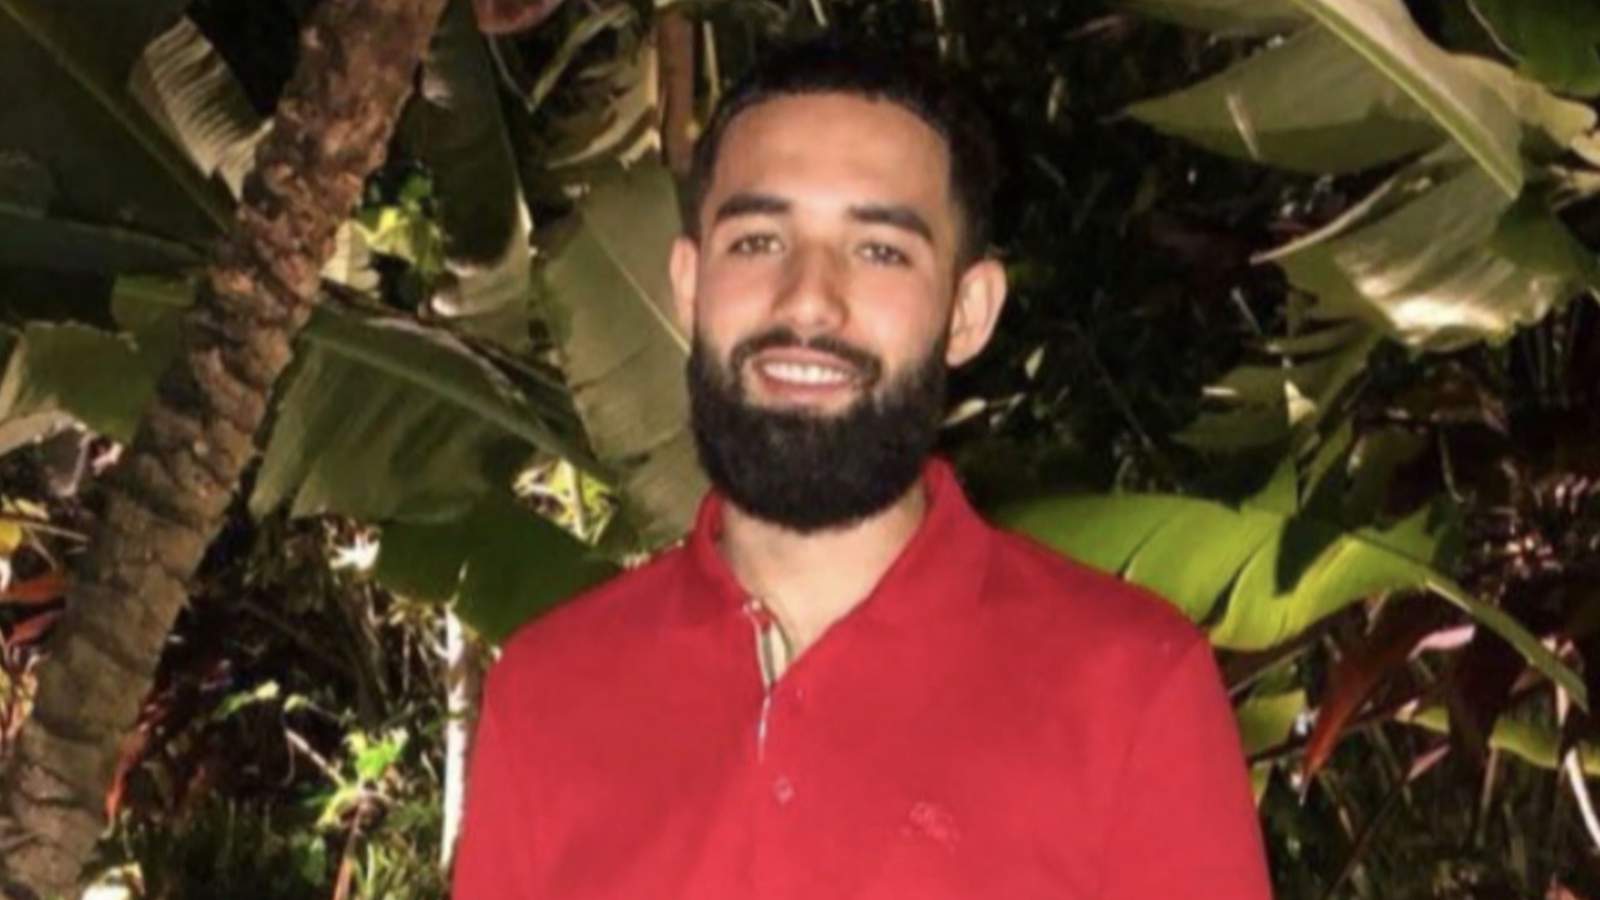 El cuerpo de un joven de 22 años  fue encontrado en una casa de Miami Gardens